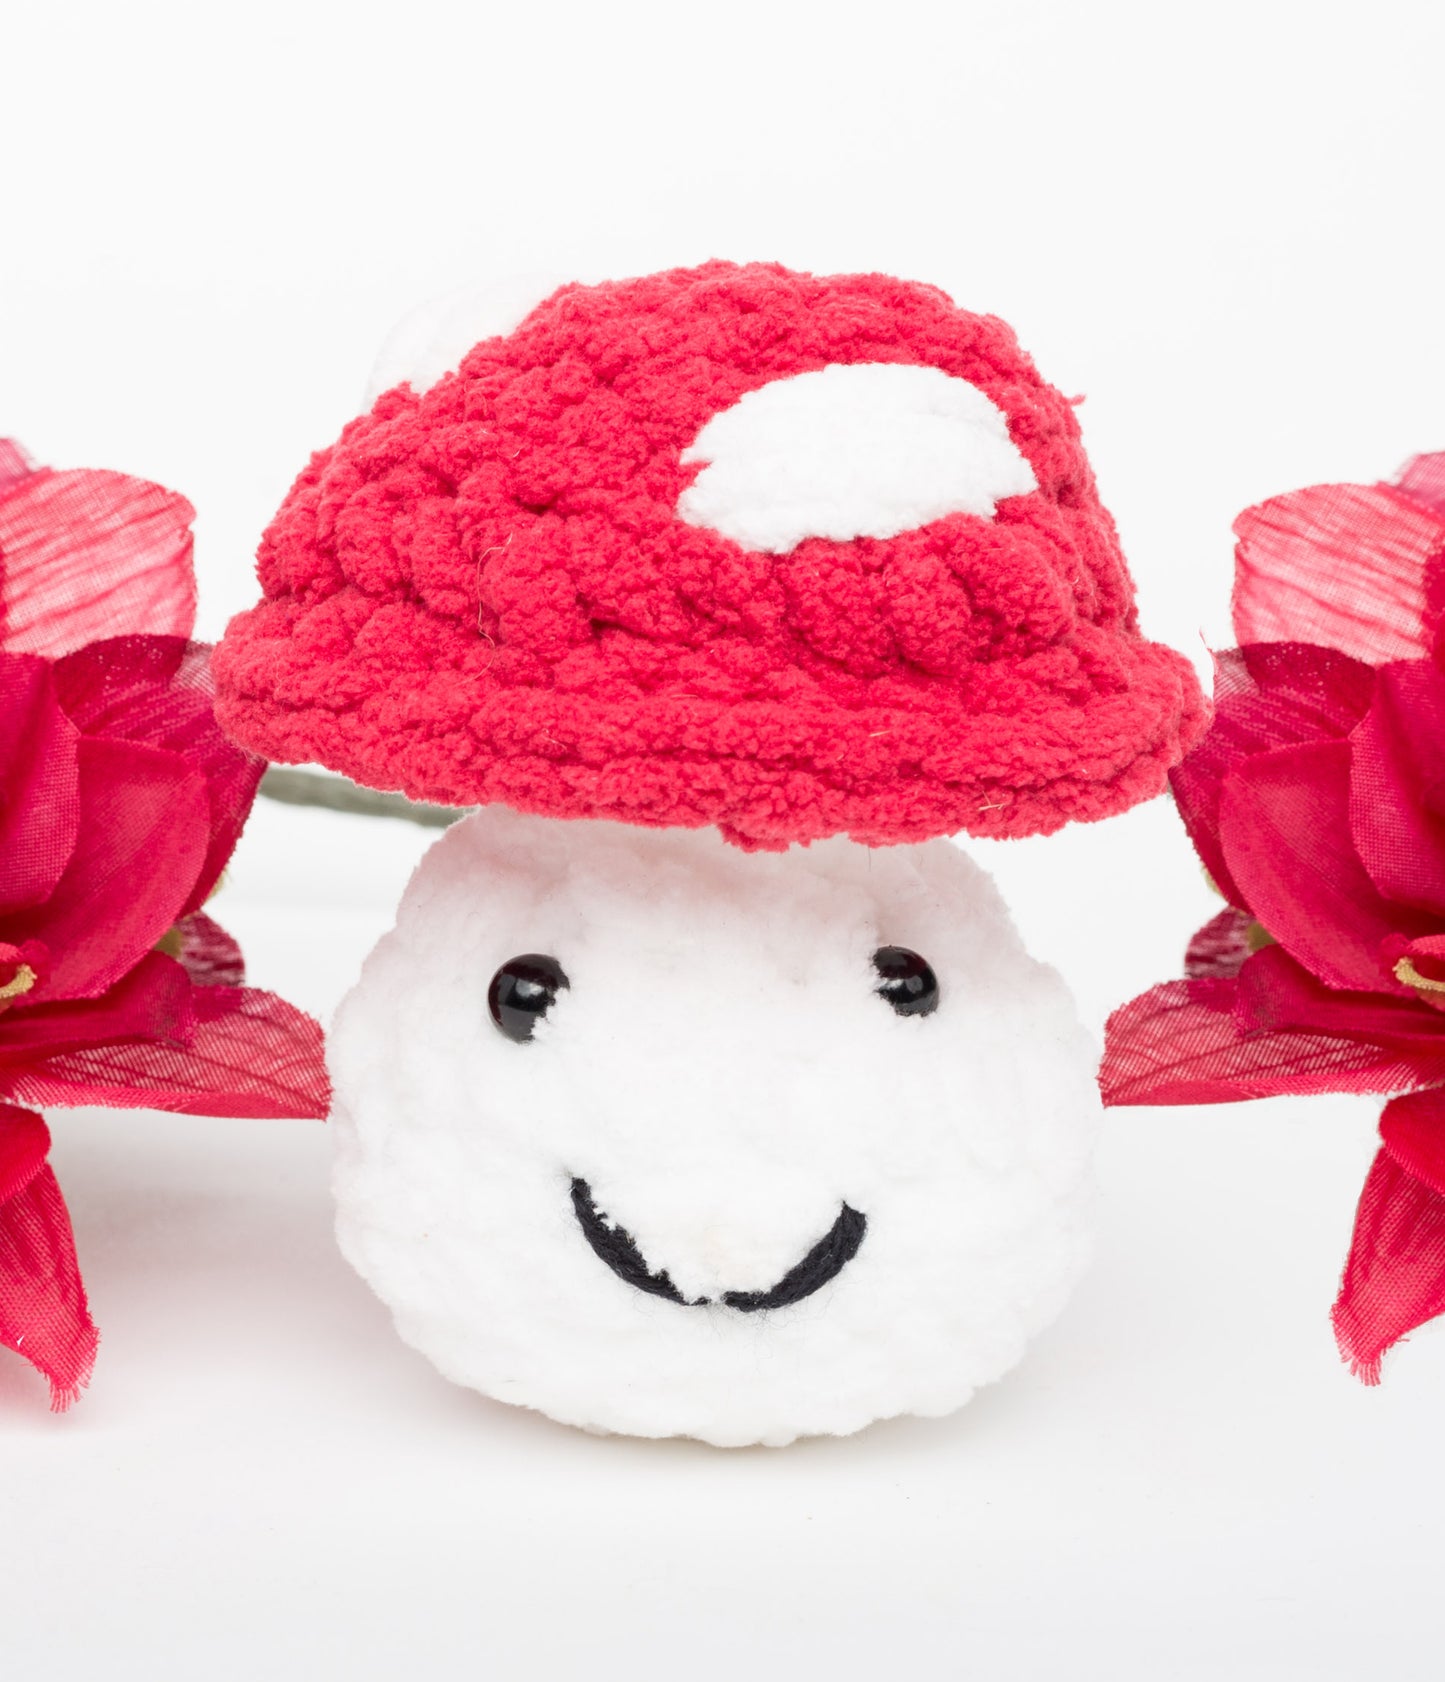 Amanita mushroom hand-crocheted plushie